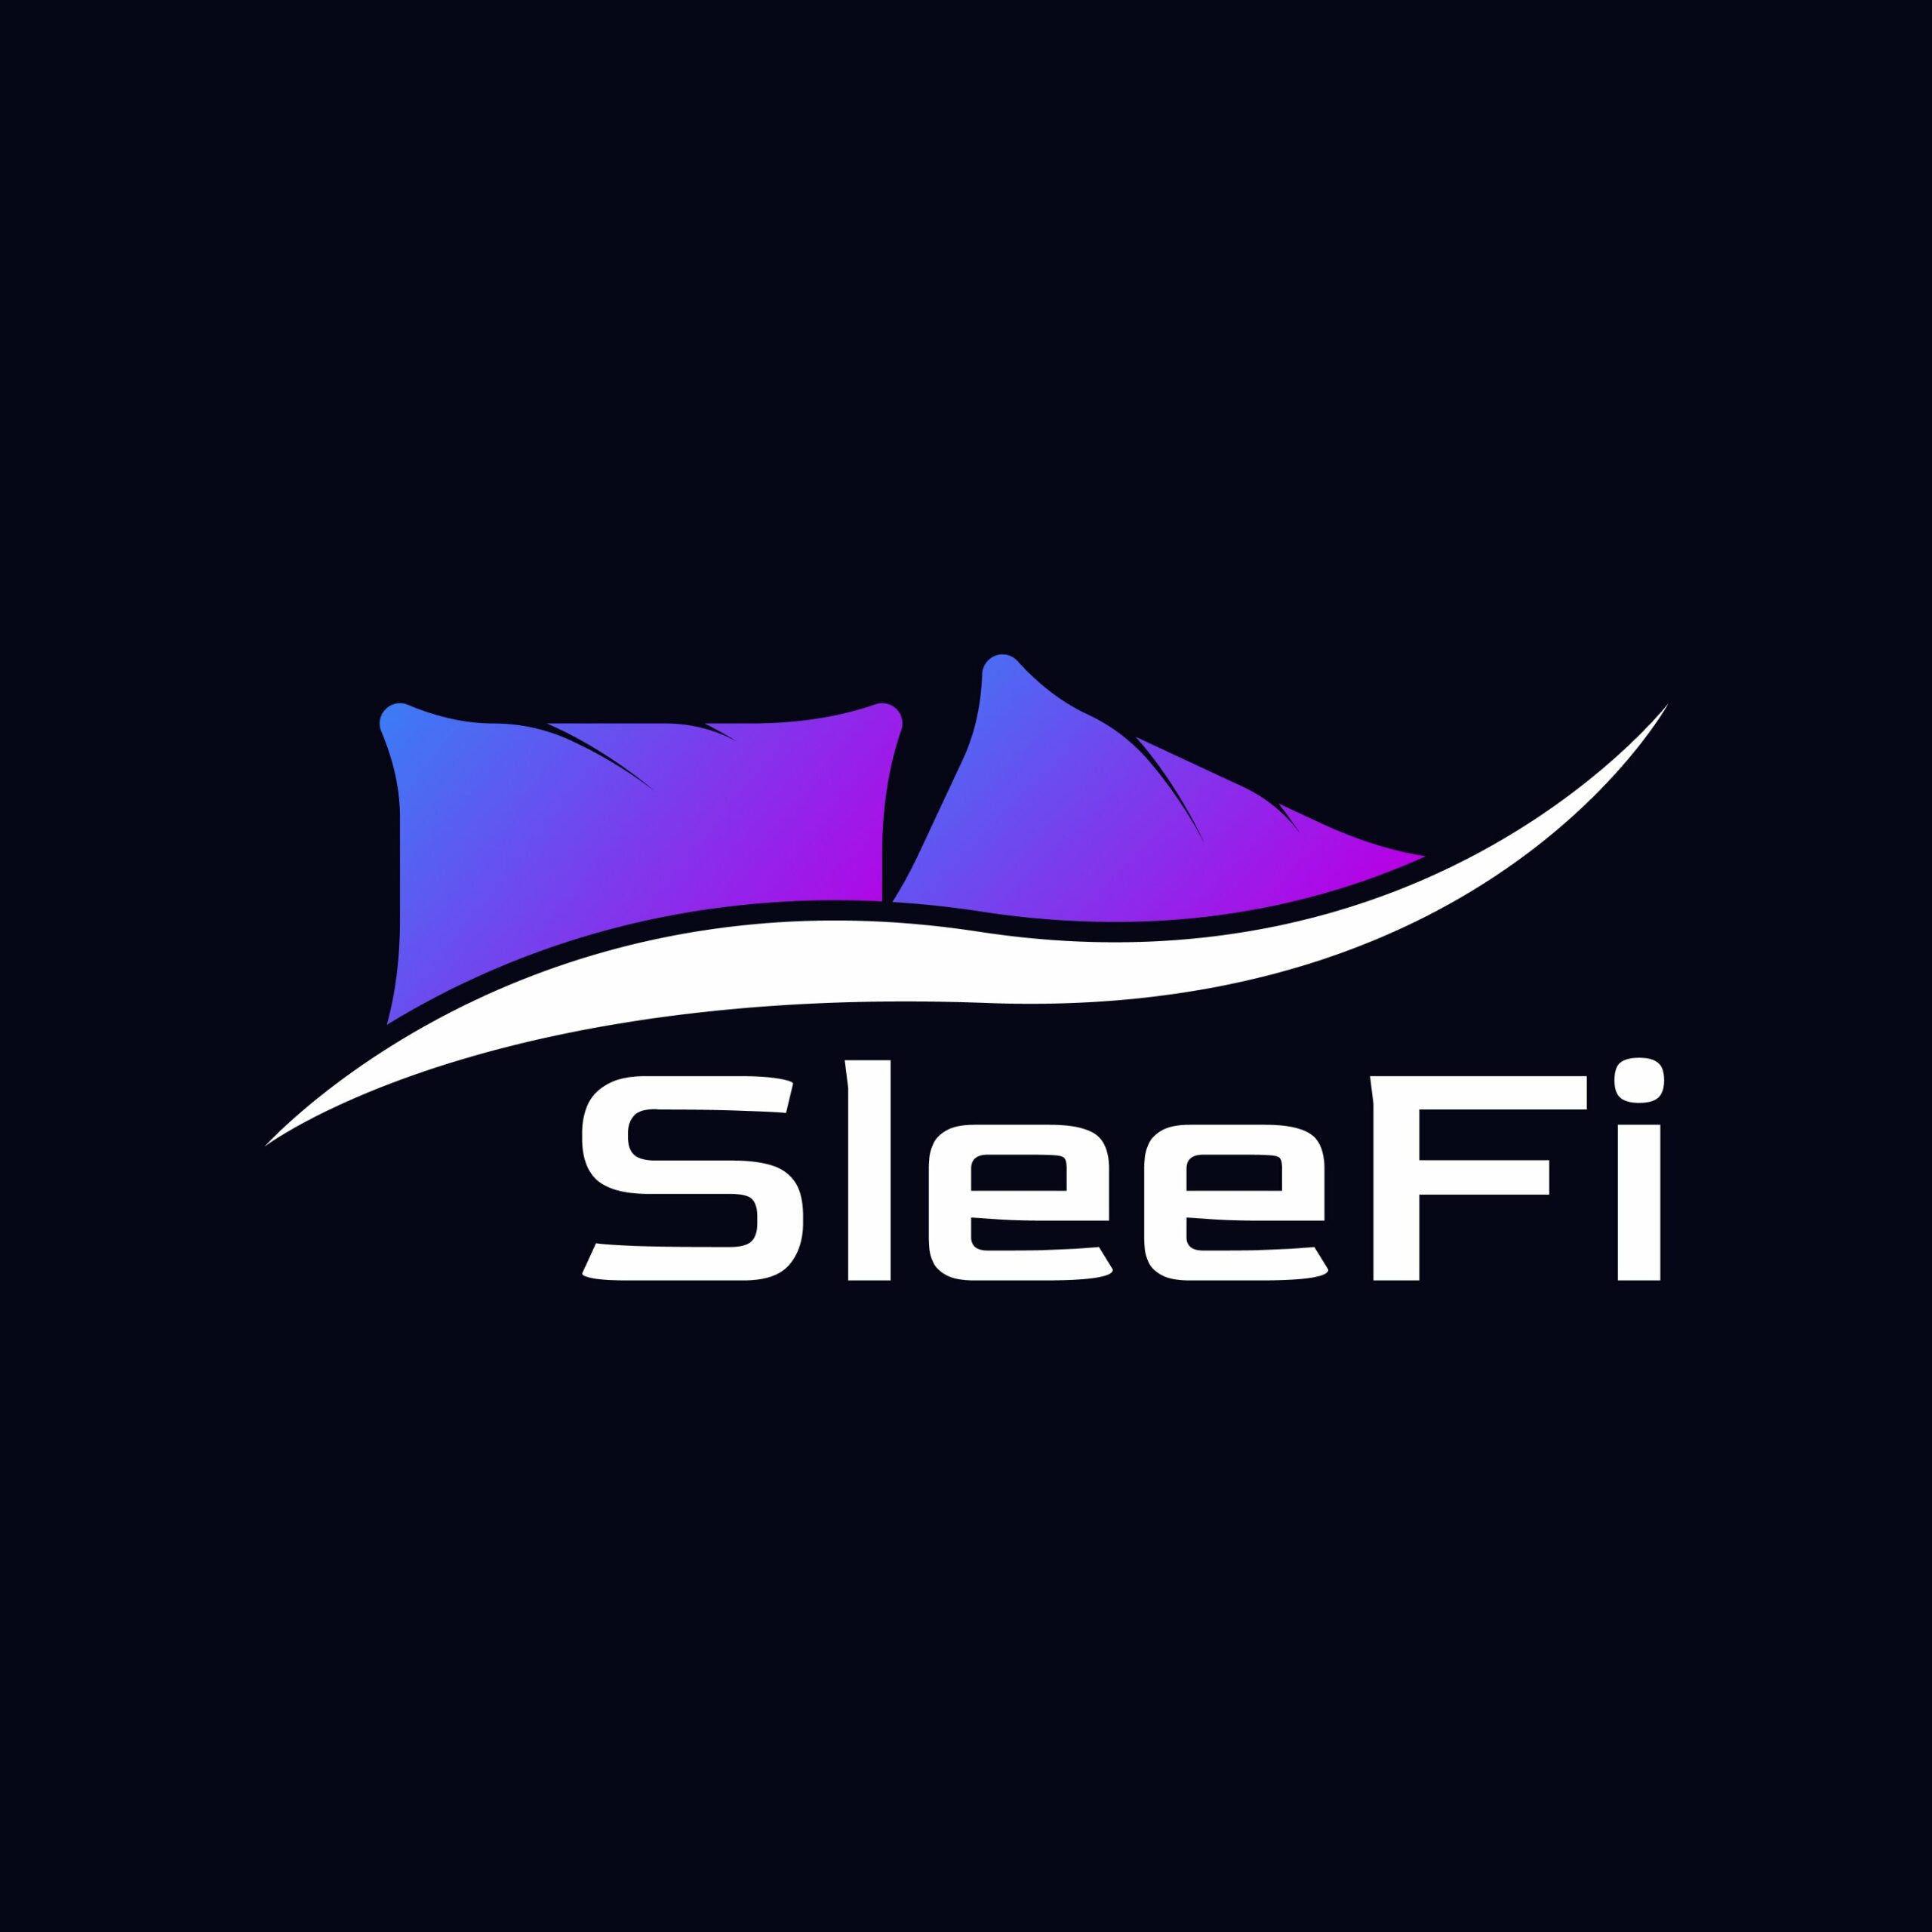 sleep to earn sleefi